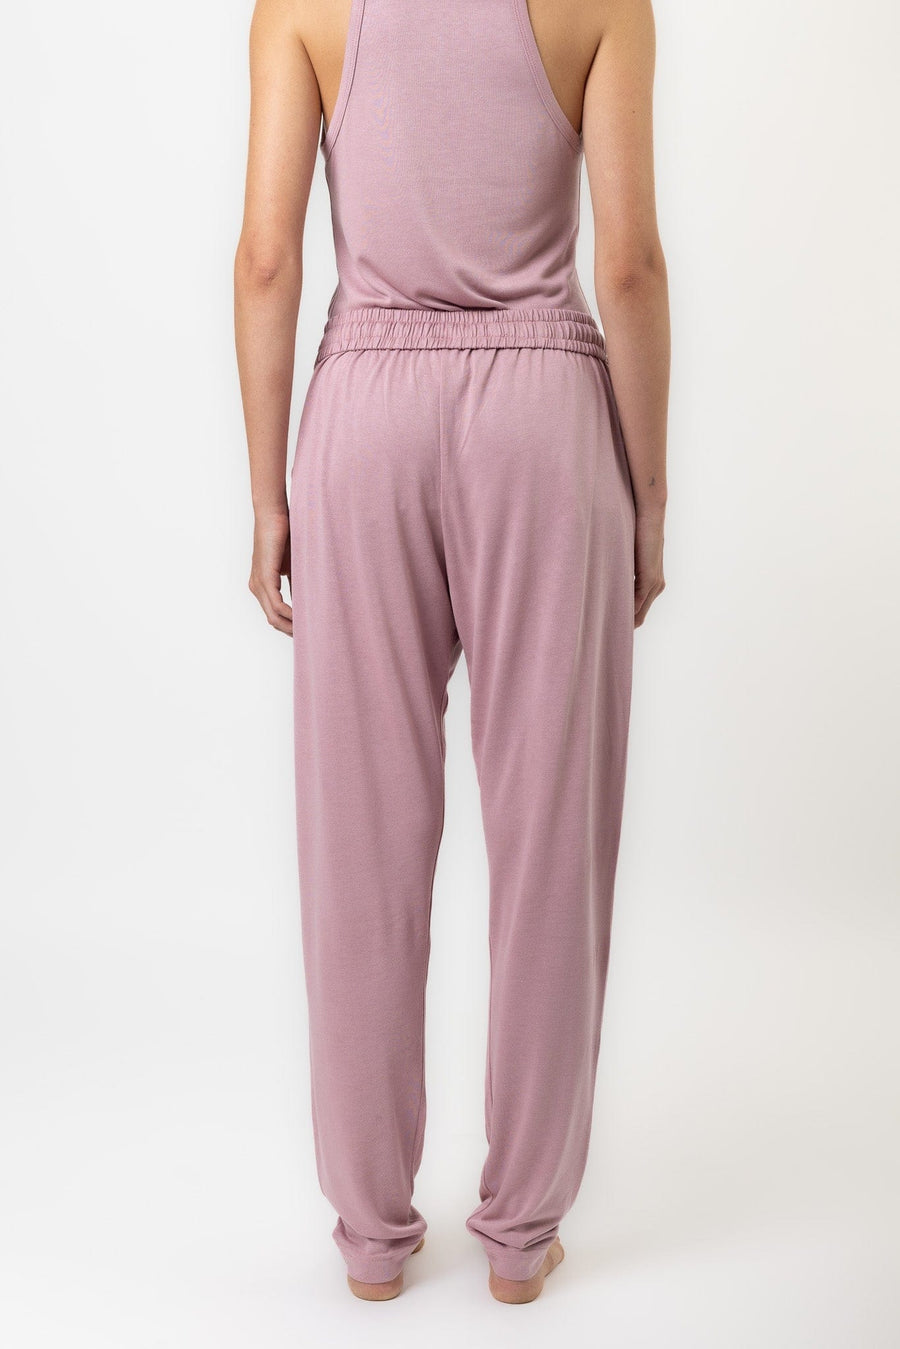 Lilt Pant | Blush Pink Lilt Pant Lounge Pants Pajamas Australia Online | Reverie the Label  BOTTOMS Lilt Pant